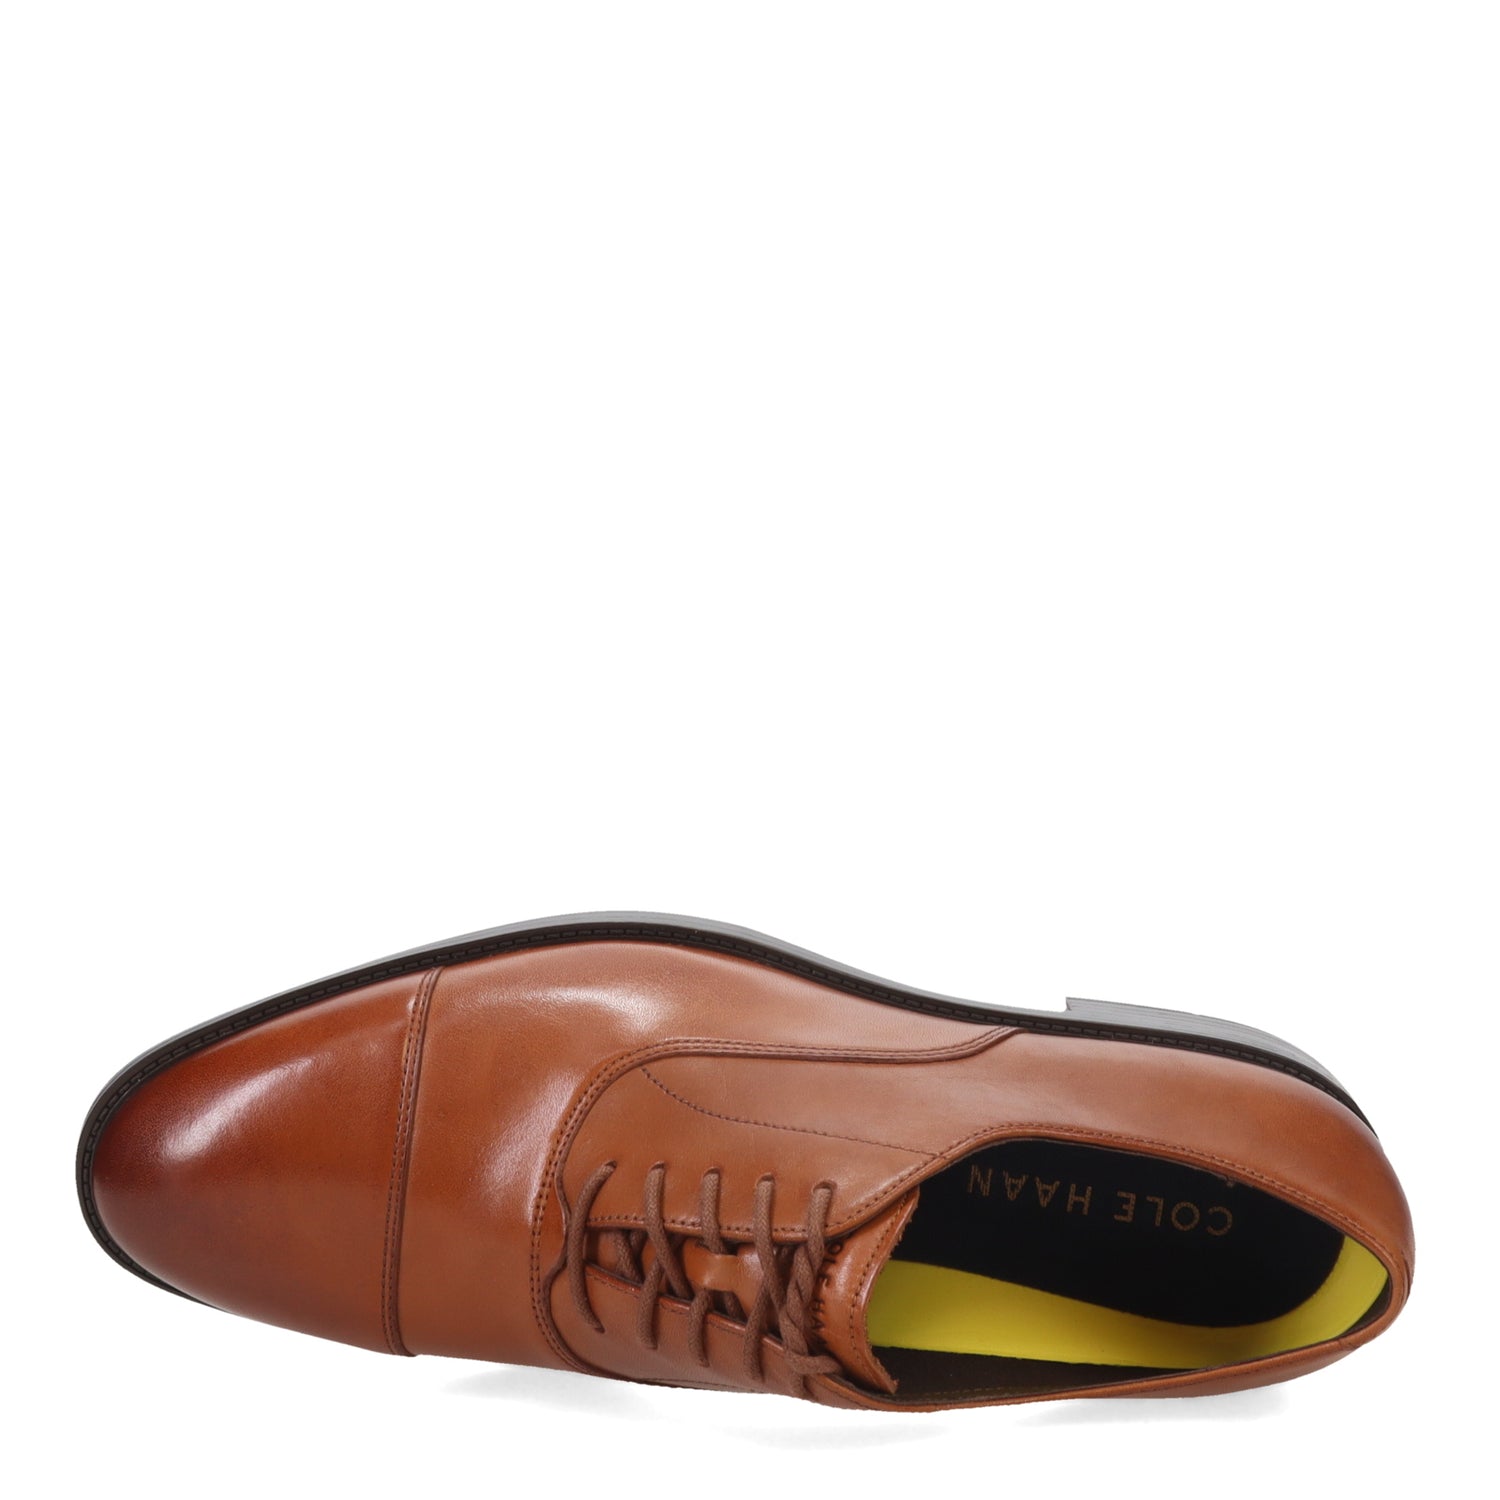 Peltz Shoes  Men's Cole Haan Hawthorne Cap Toe Oxford British Tan C38721